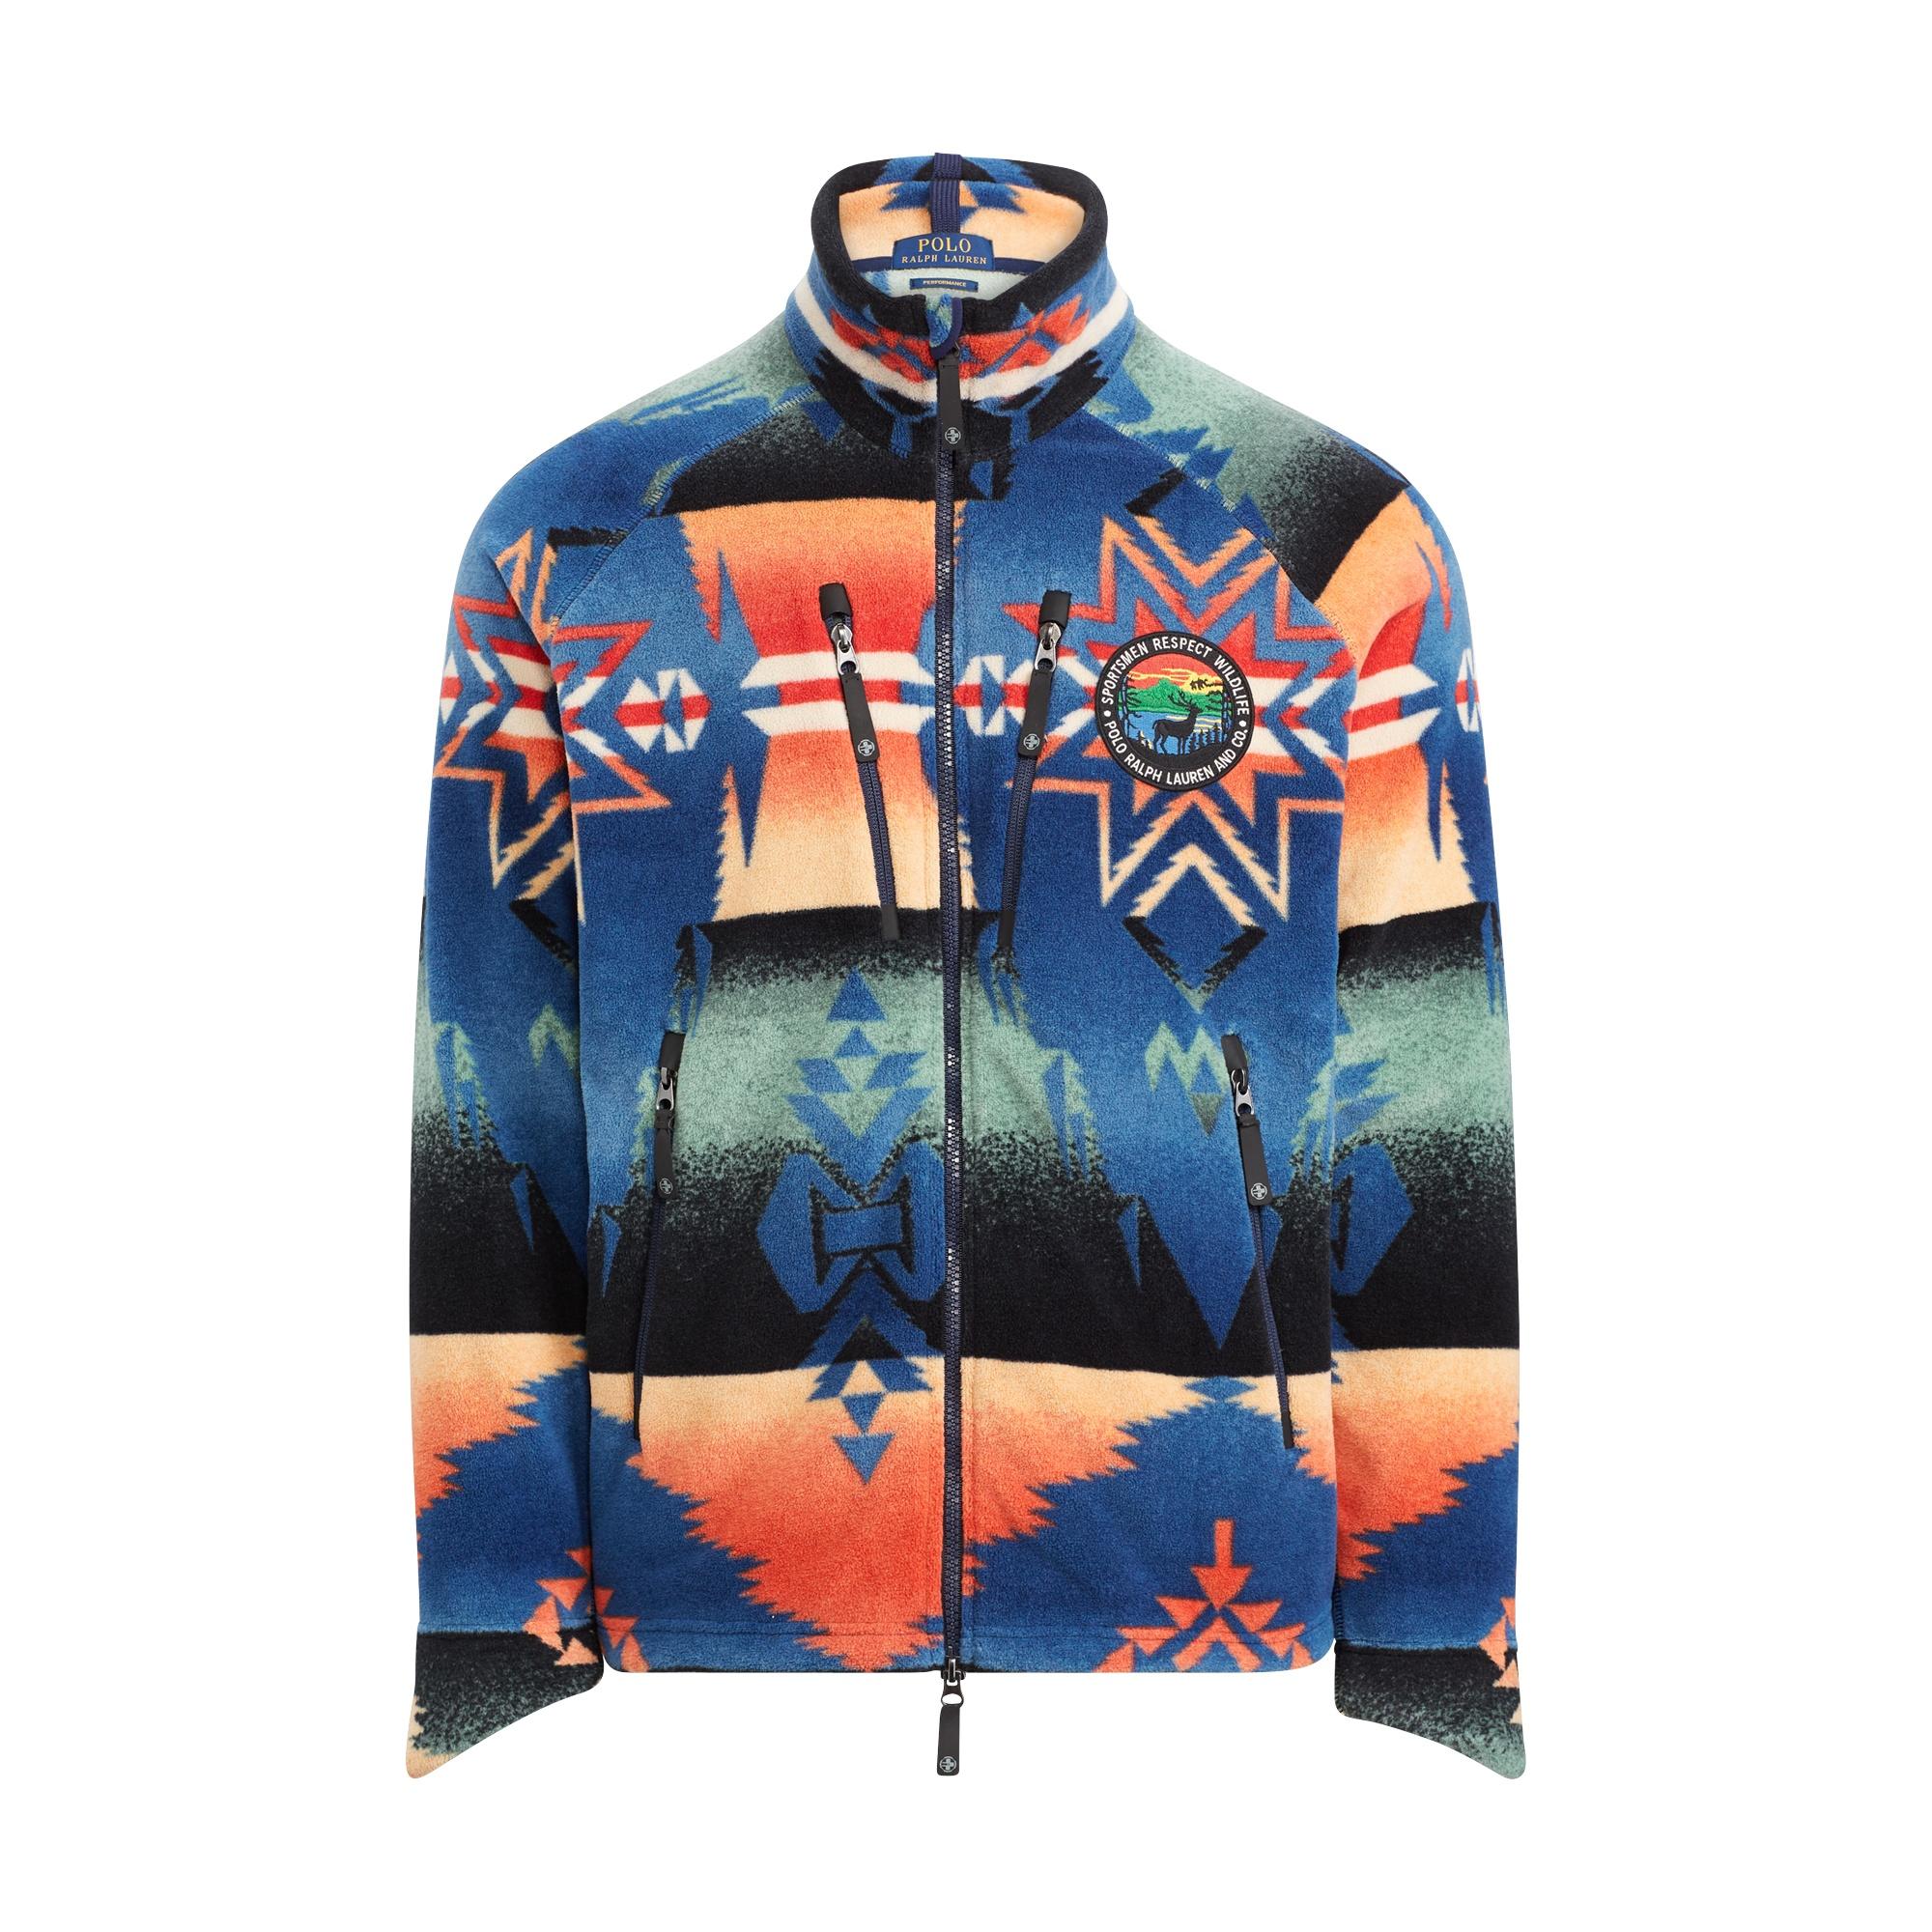 Polo Ralph Lauren Southwestern Fleece Jacket in Blue for Men - Lyst